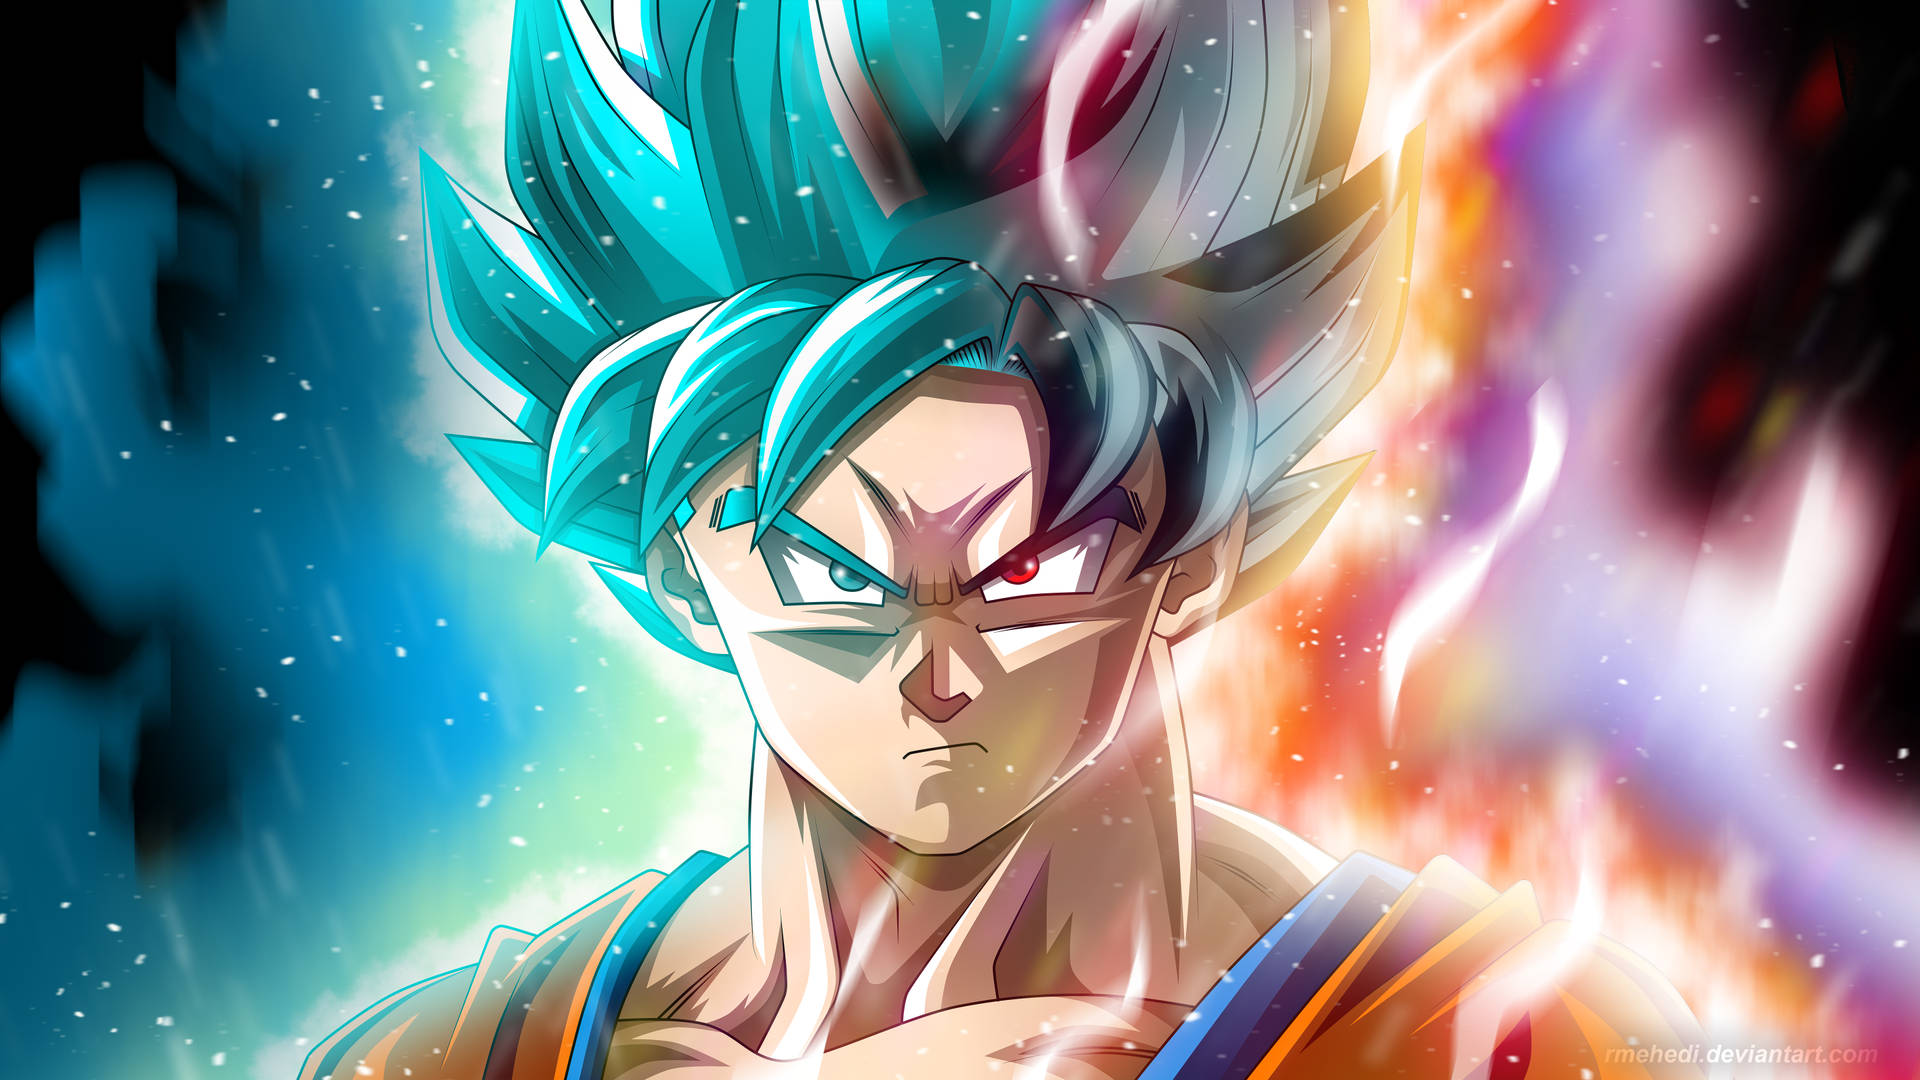 Goku4k Ultra Hd Halvt Blått Hår. Wallpaper